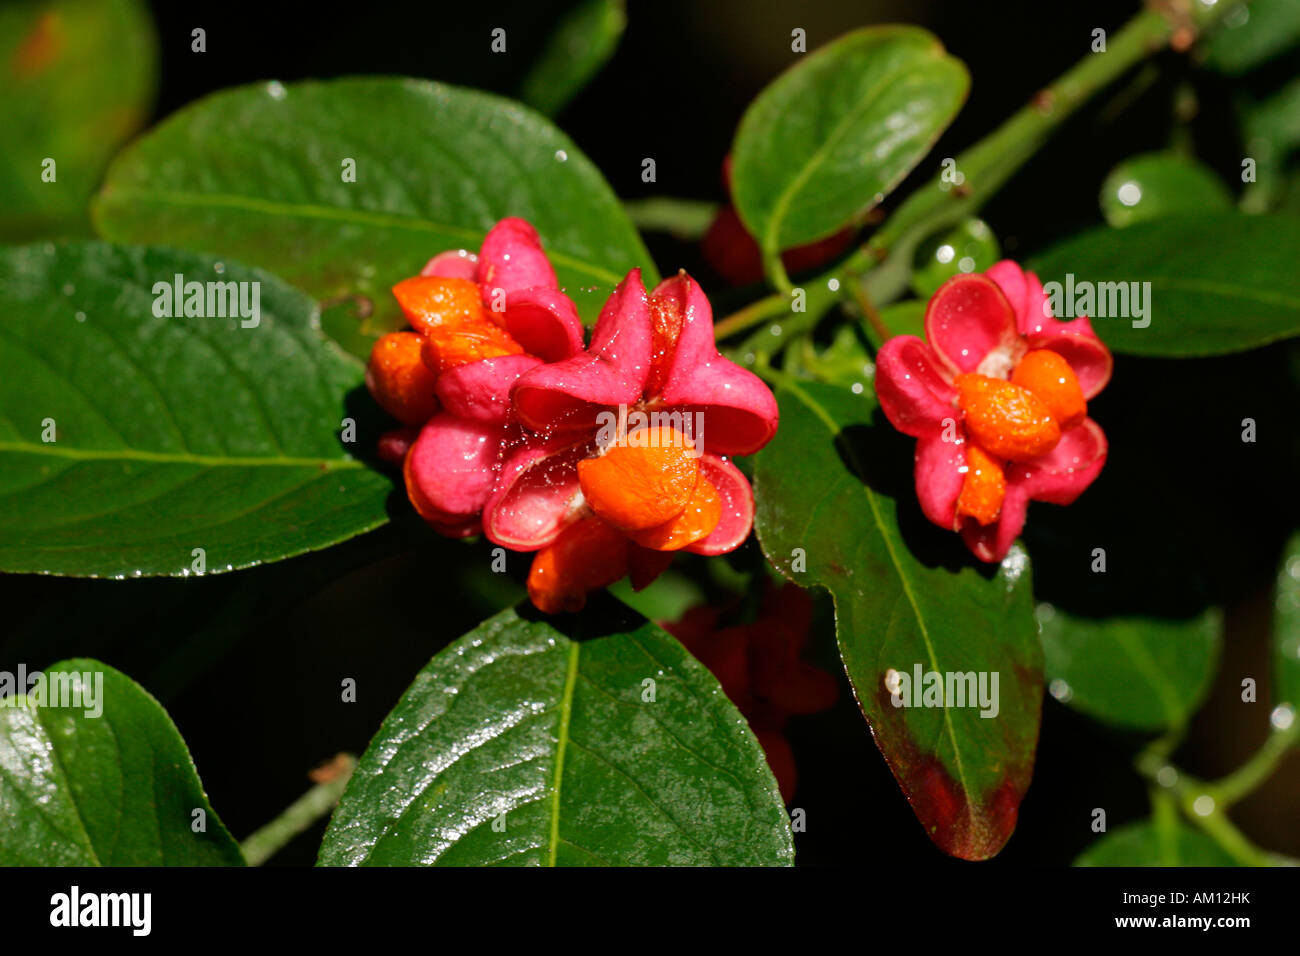 Common spindle - fruits (Euonymus europaeus) Stock Photo